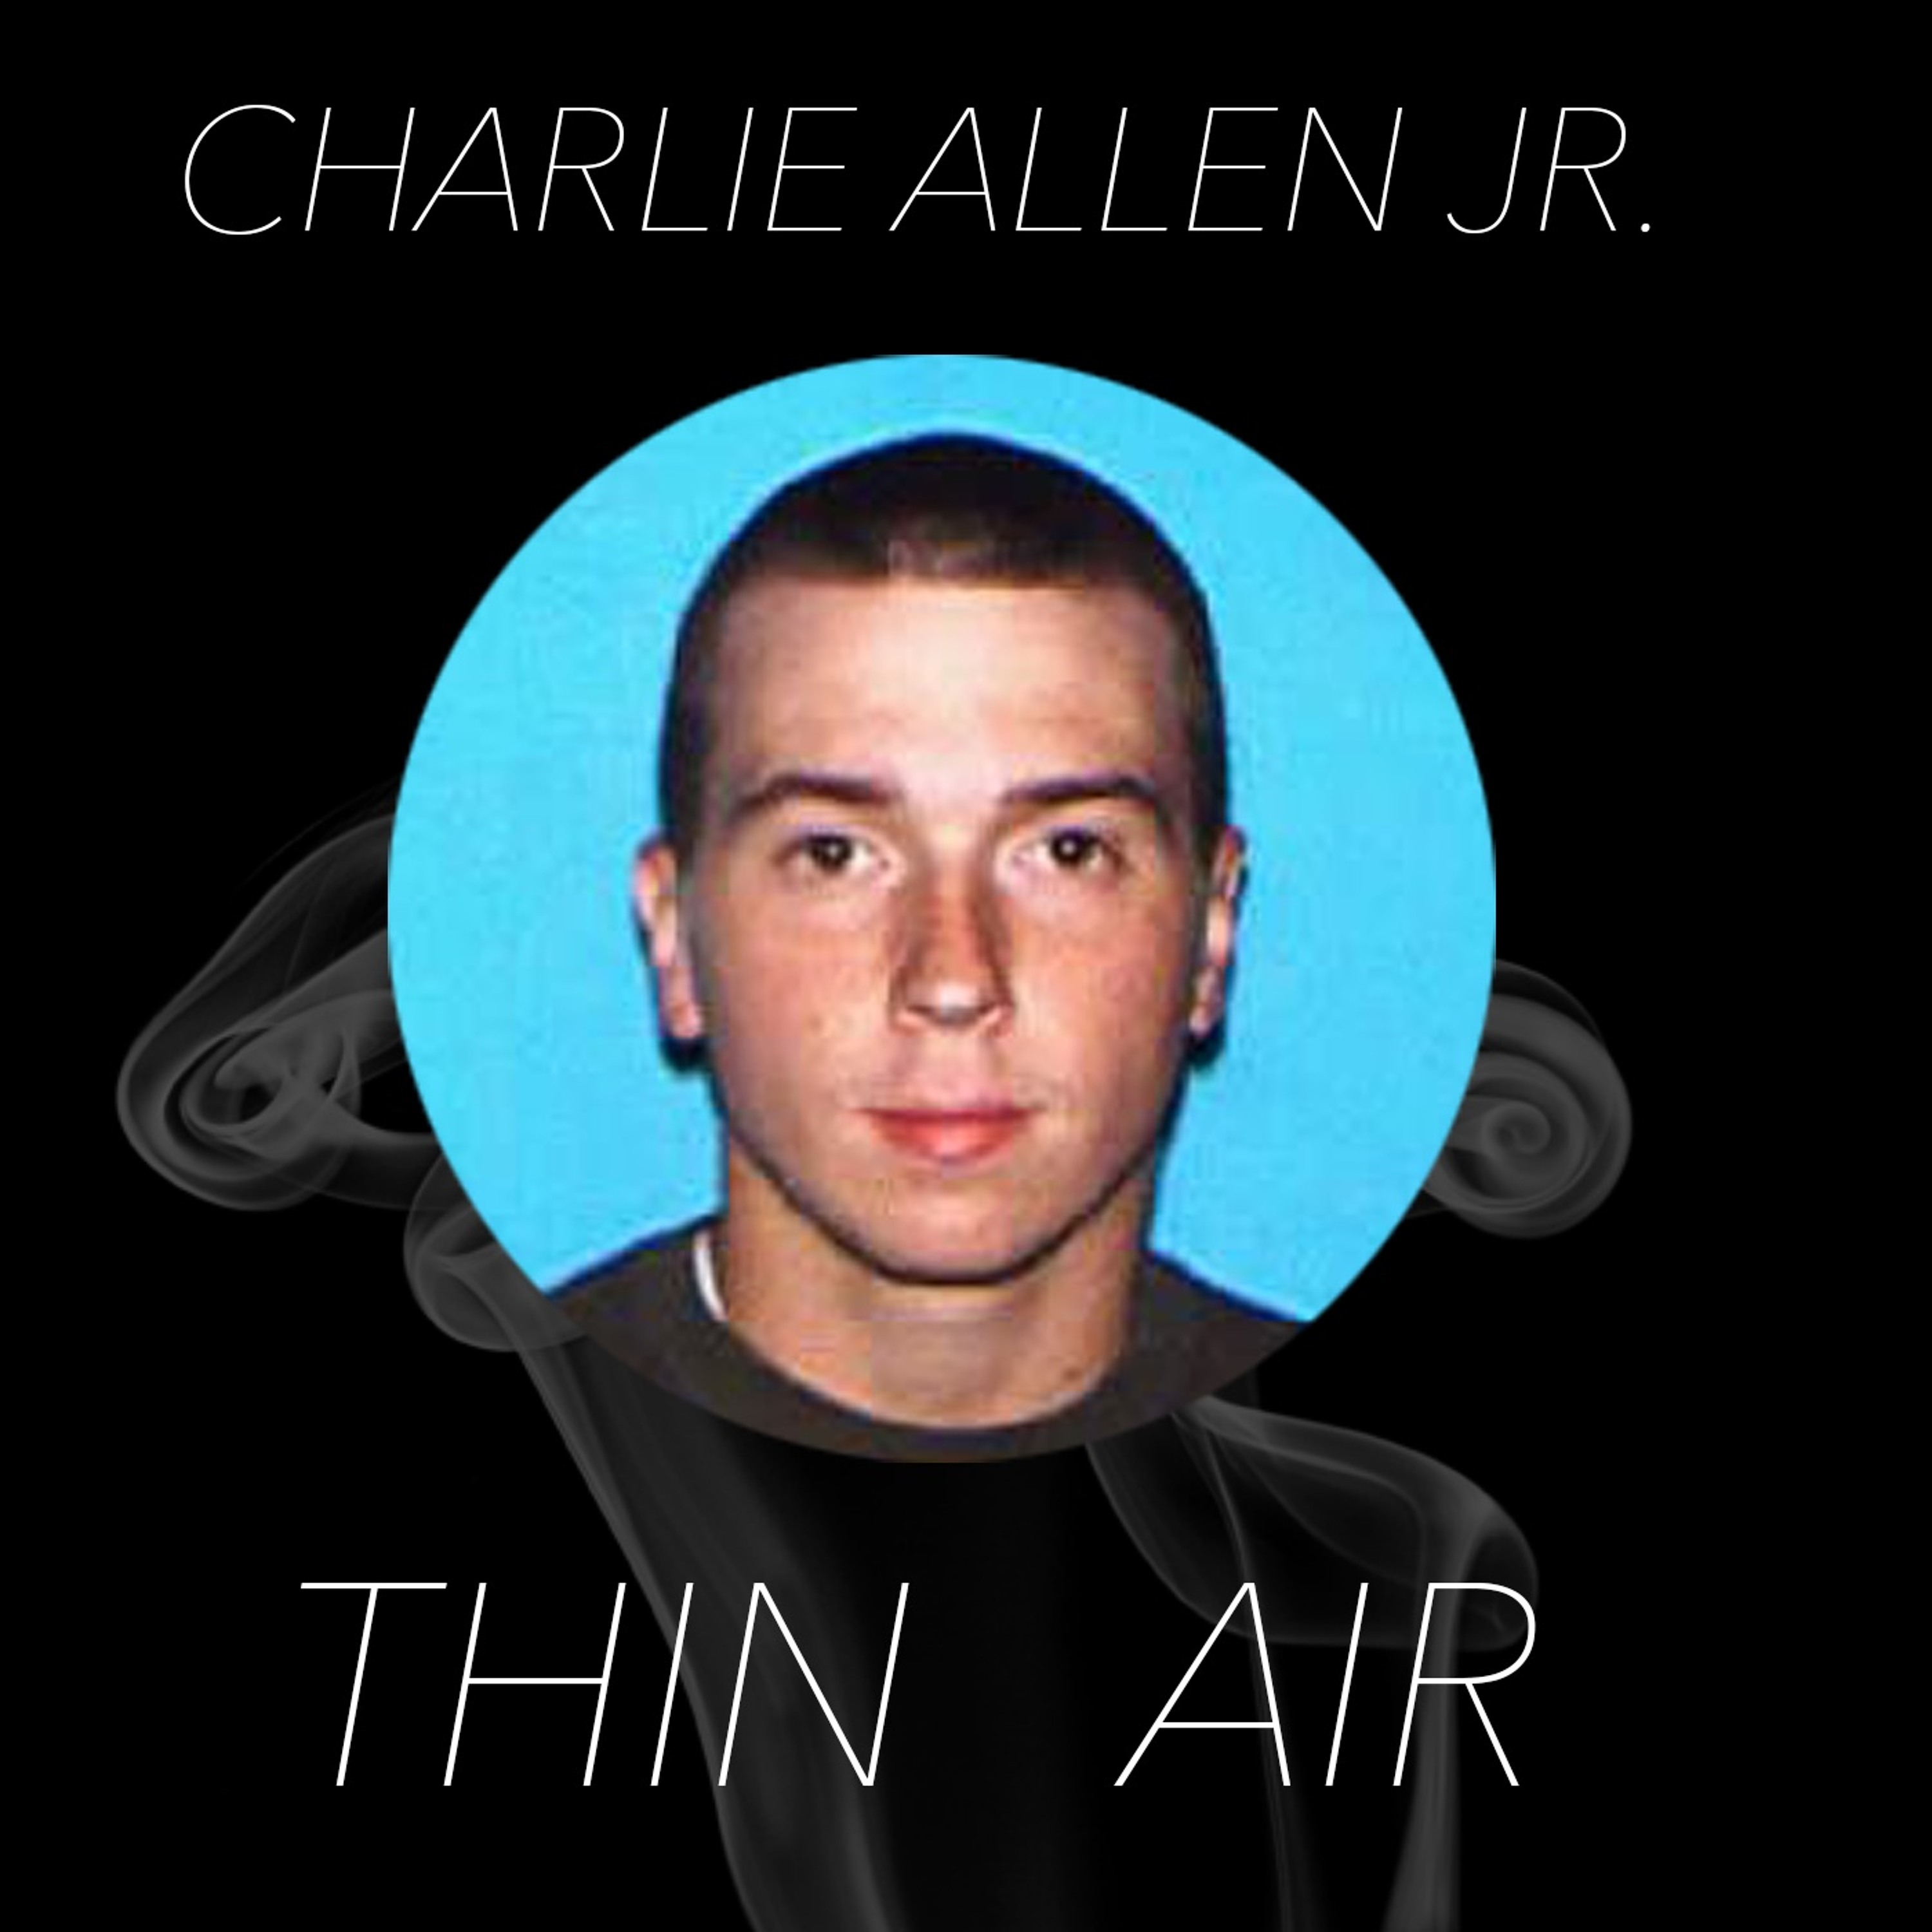 Episode 1 - Charlie Allen Jr